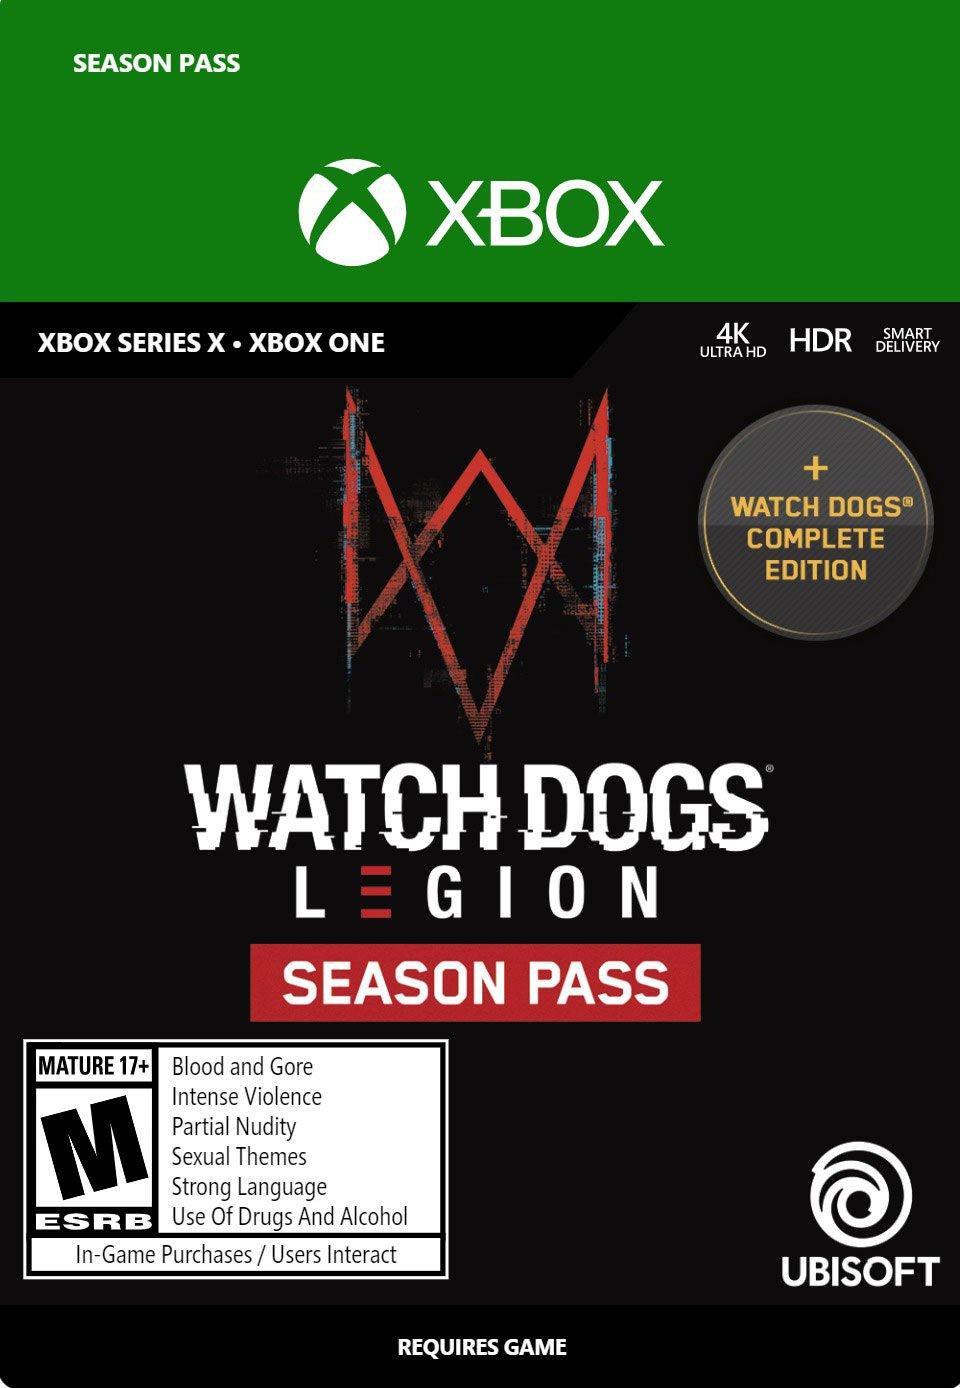 Season Pass (Watch Dogs: Legion), Watch Dogs Wiki